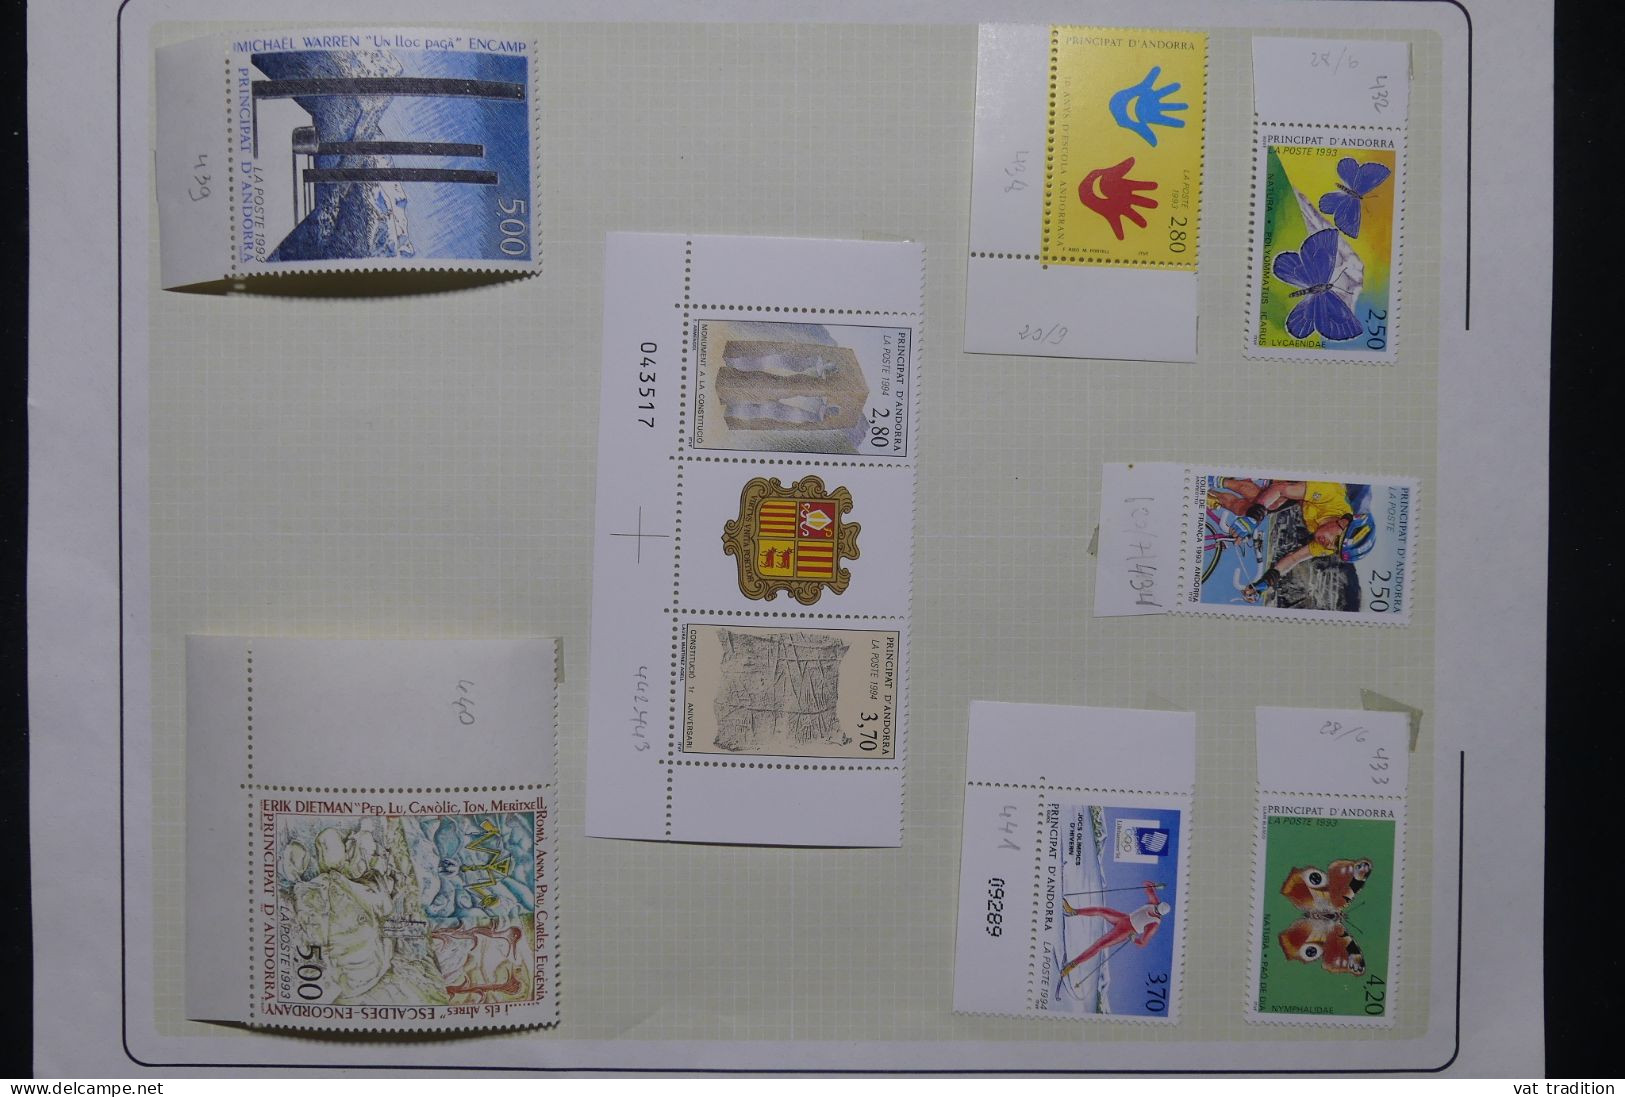 ANDORRE - Petite collection mais tous les timbres sont luxes - Les charnières sont sur les bords de feuille - A 78